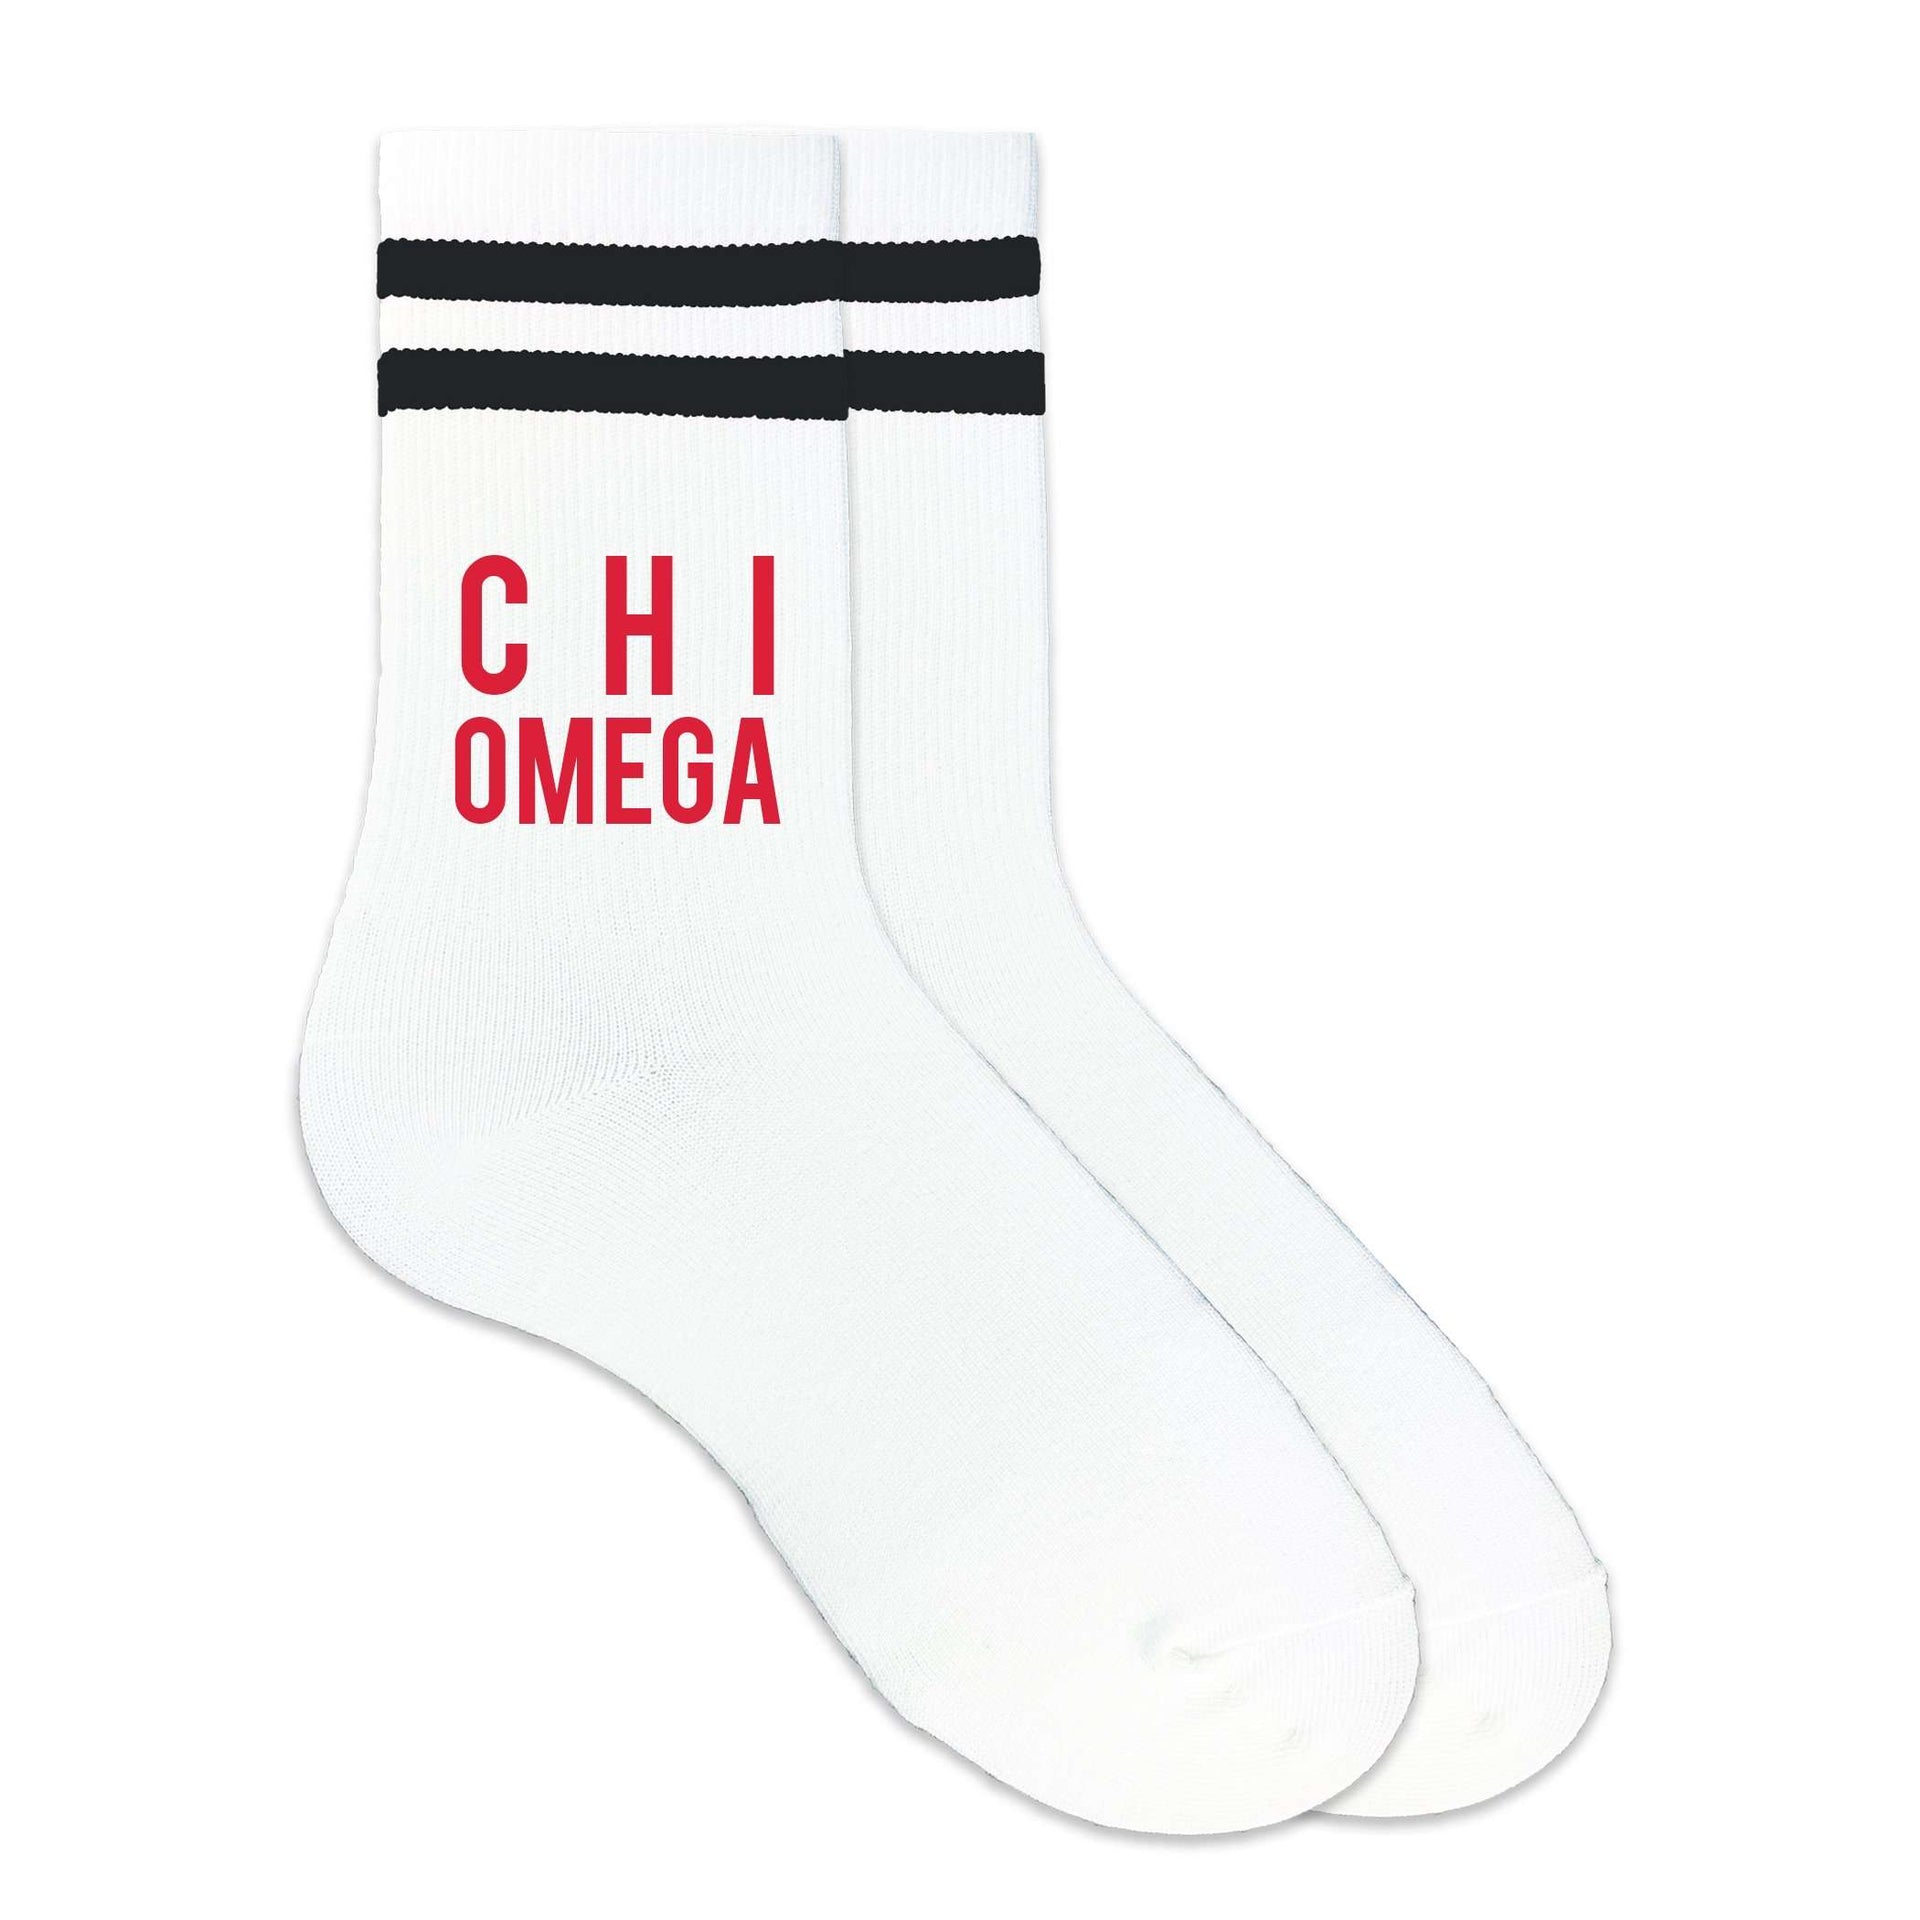 Chi Omega sorority name in sorority colors custom printed on black striped crew socks